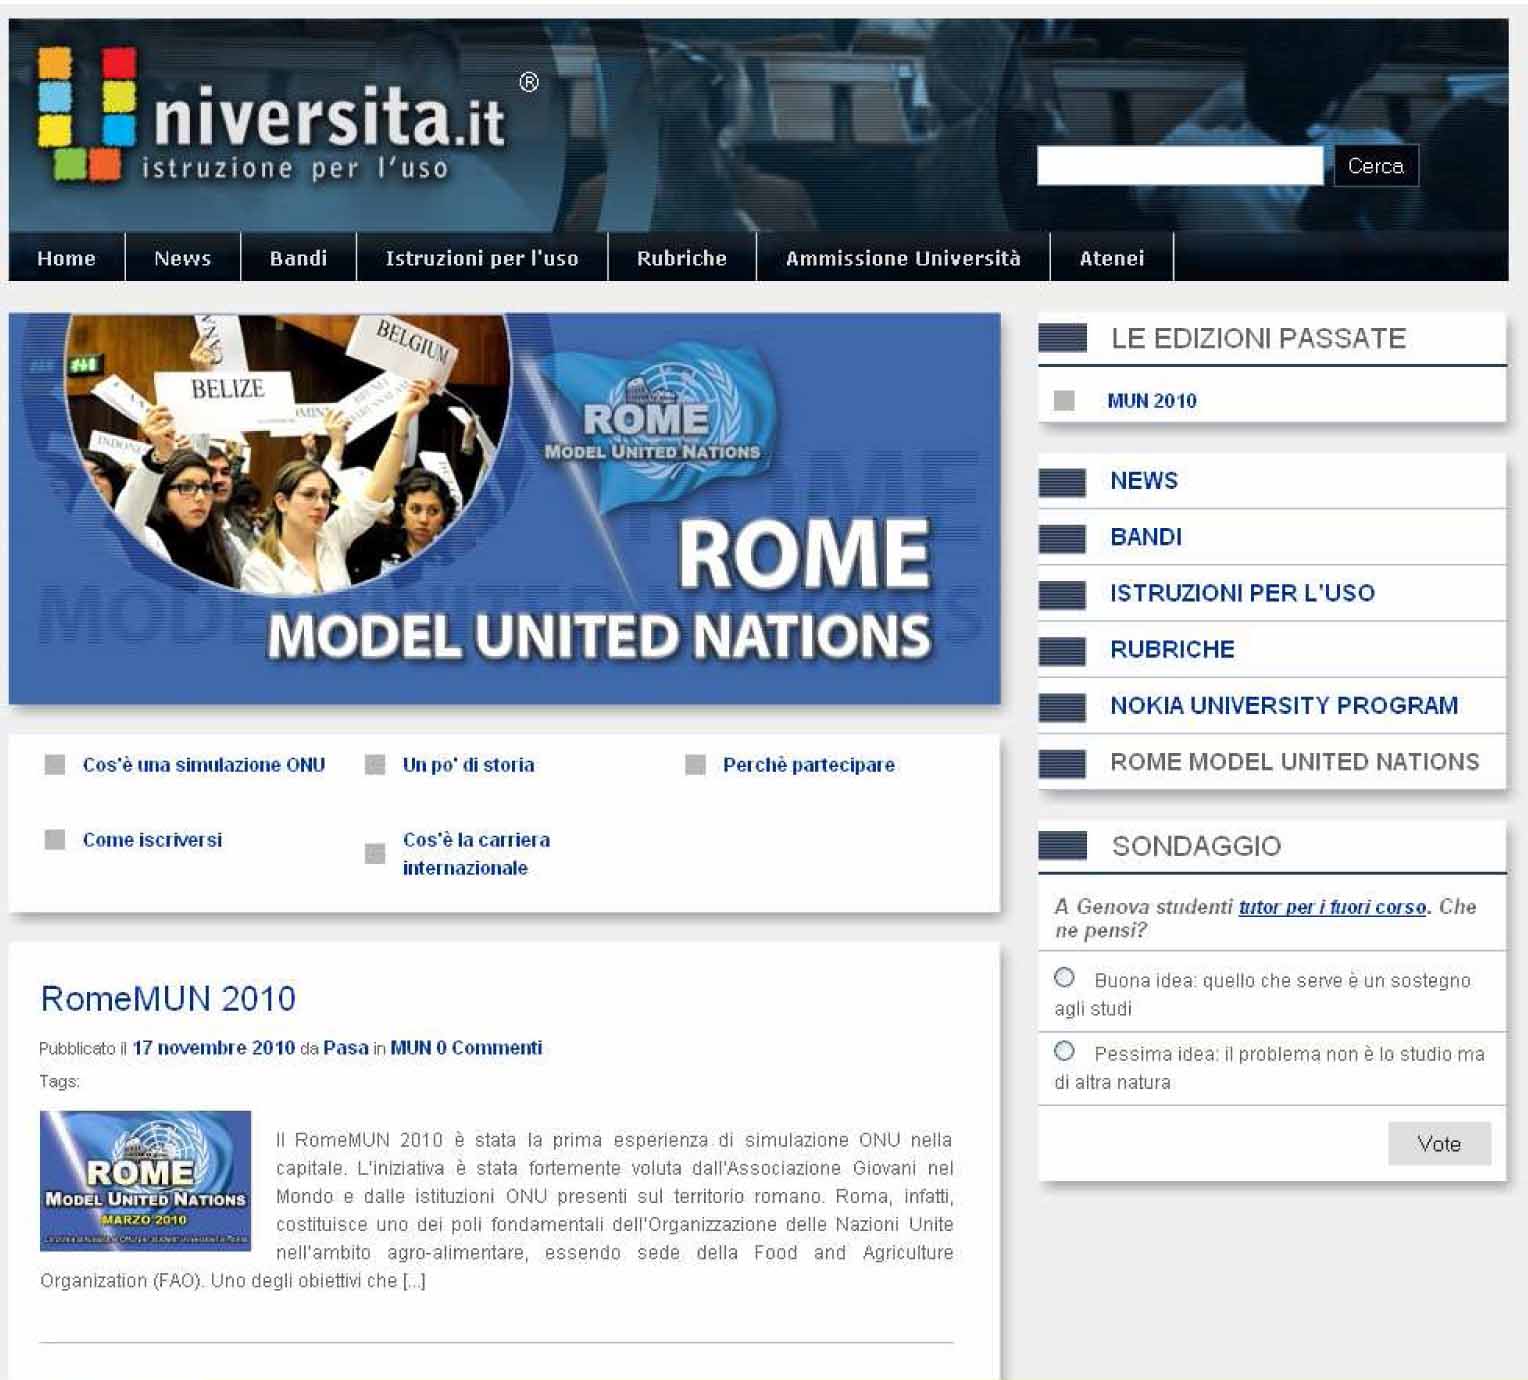 Università.it partner per RomeMun 2011